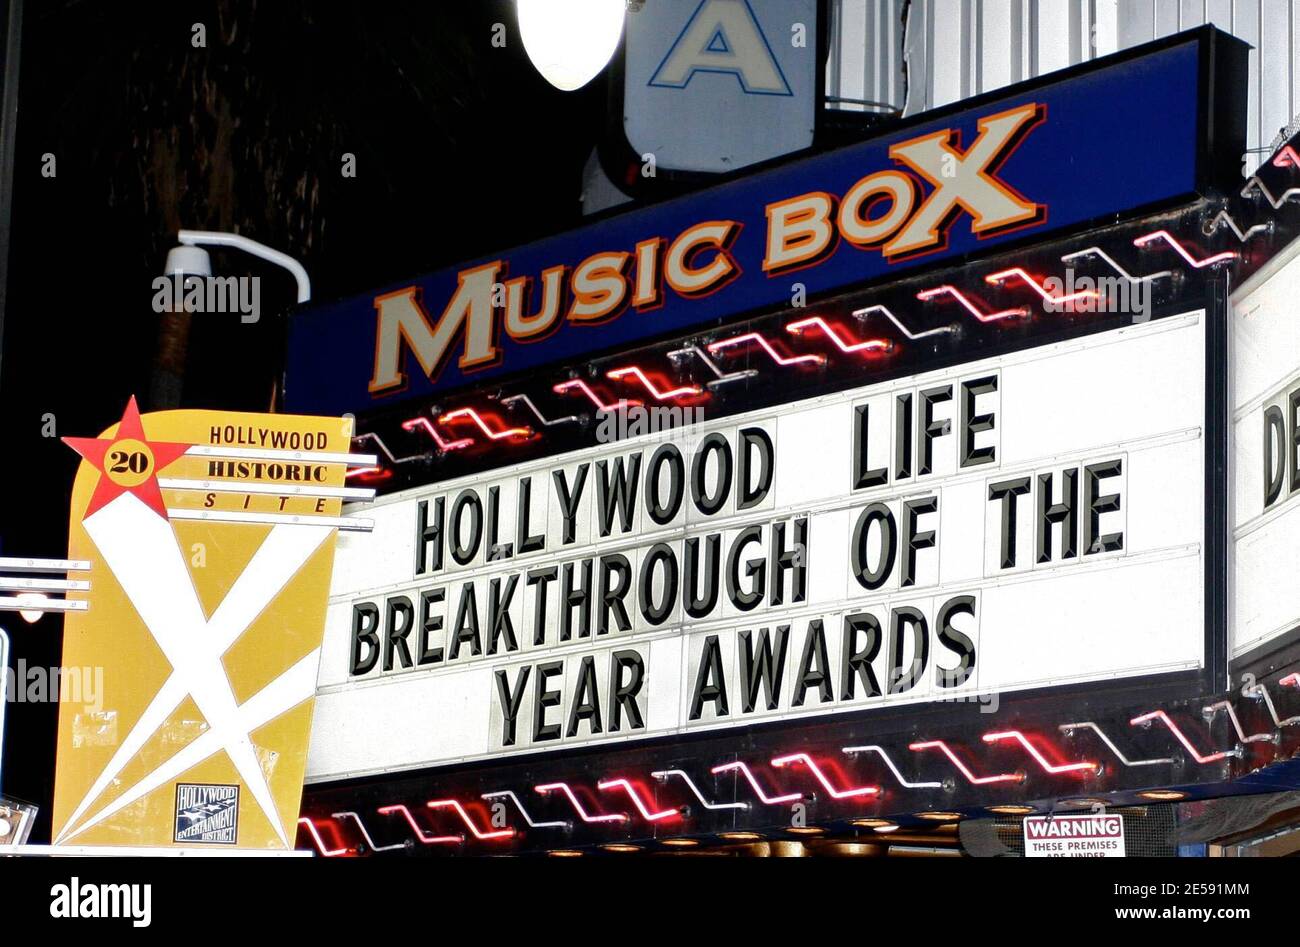 Le 7e prix annuel Breakthrough of the Year du Hollywood Life Magazine rend hommage à des artistes talentueux dont le travail révolutionnaire dans le domaine du cinéma, de la télévision et de la musique a été catapulté cette année dans l'élite hollywoodienne. Los Angeles, Californie. 12/9/07. [[laj]] Banque D'Images